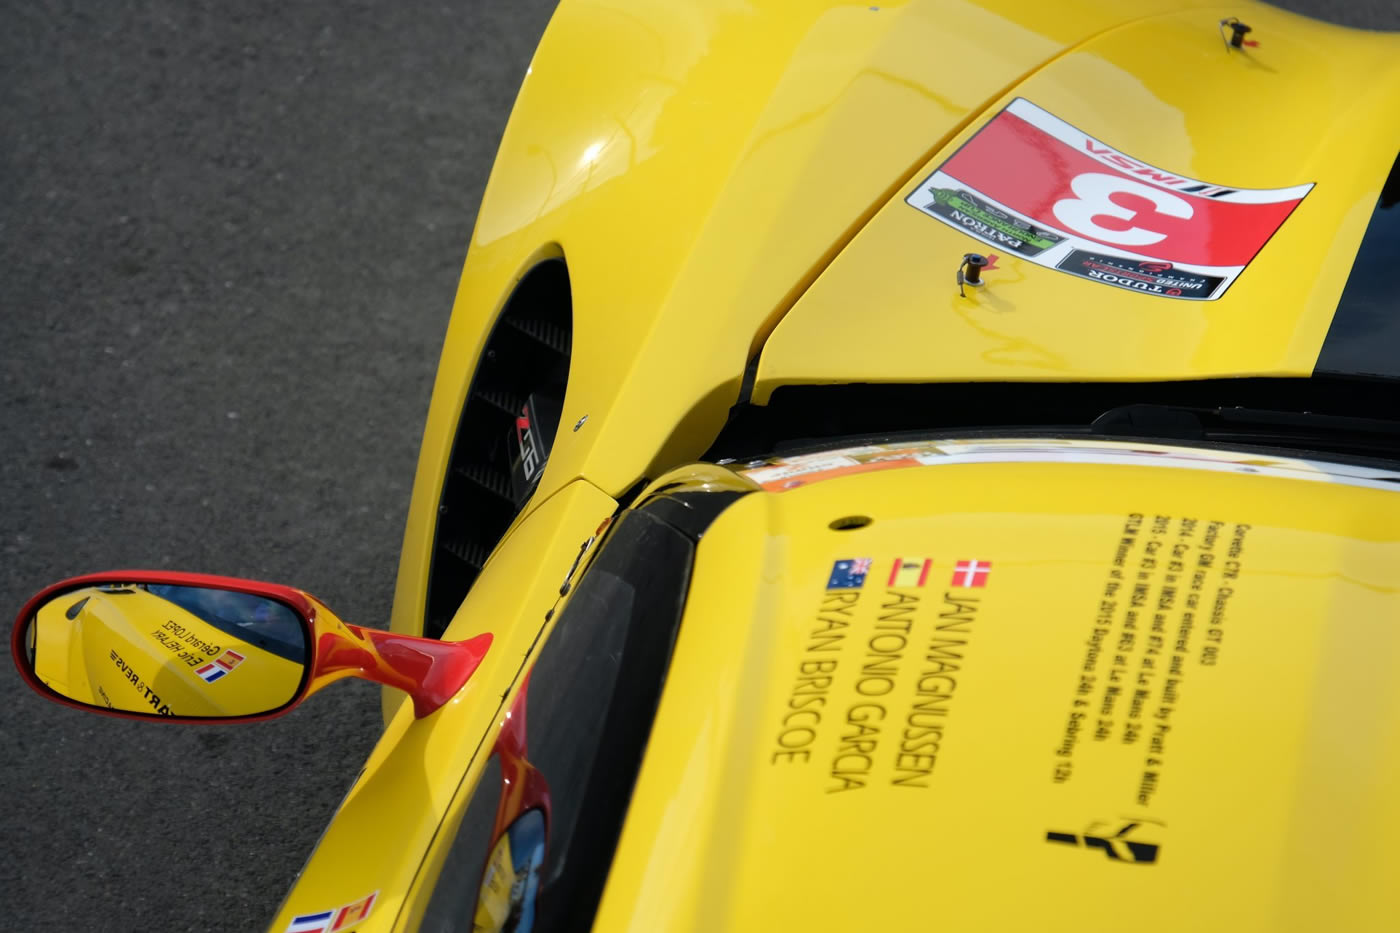 2014 Chevrolet Corvette C7.R GT Factory Race Car Number 003